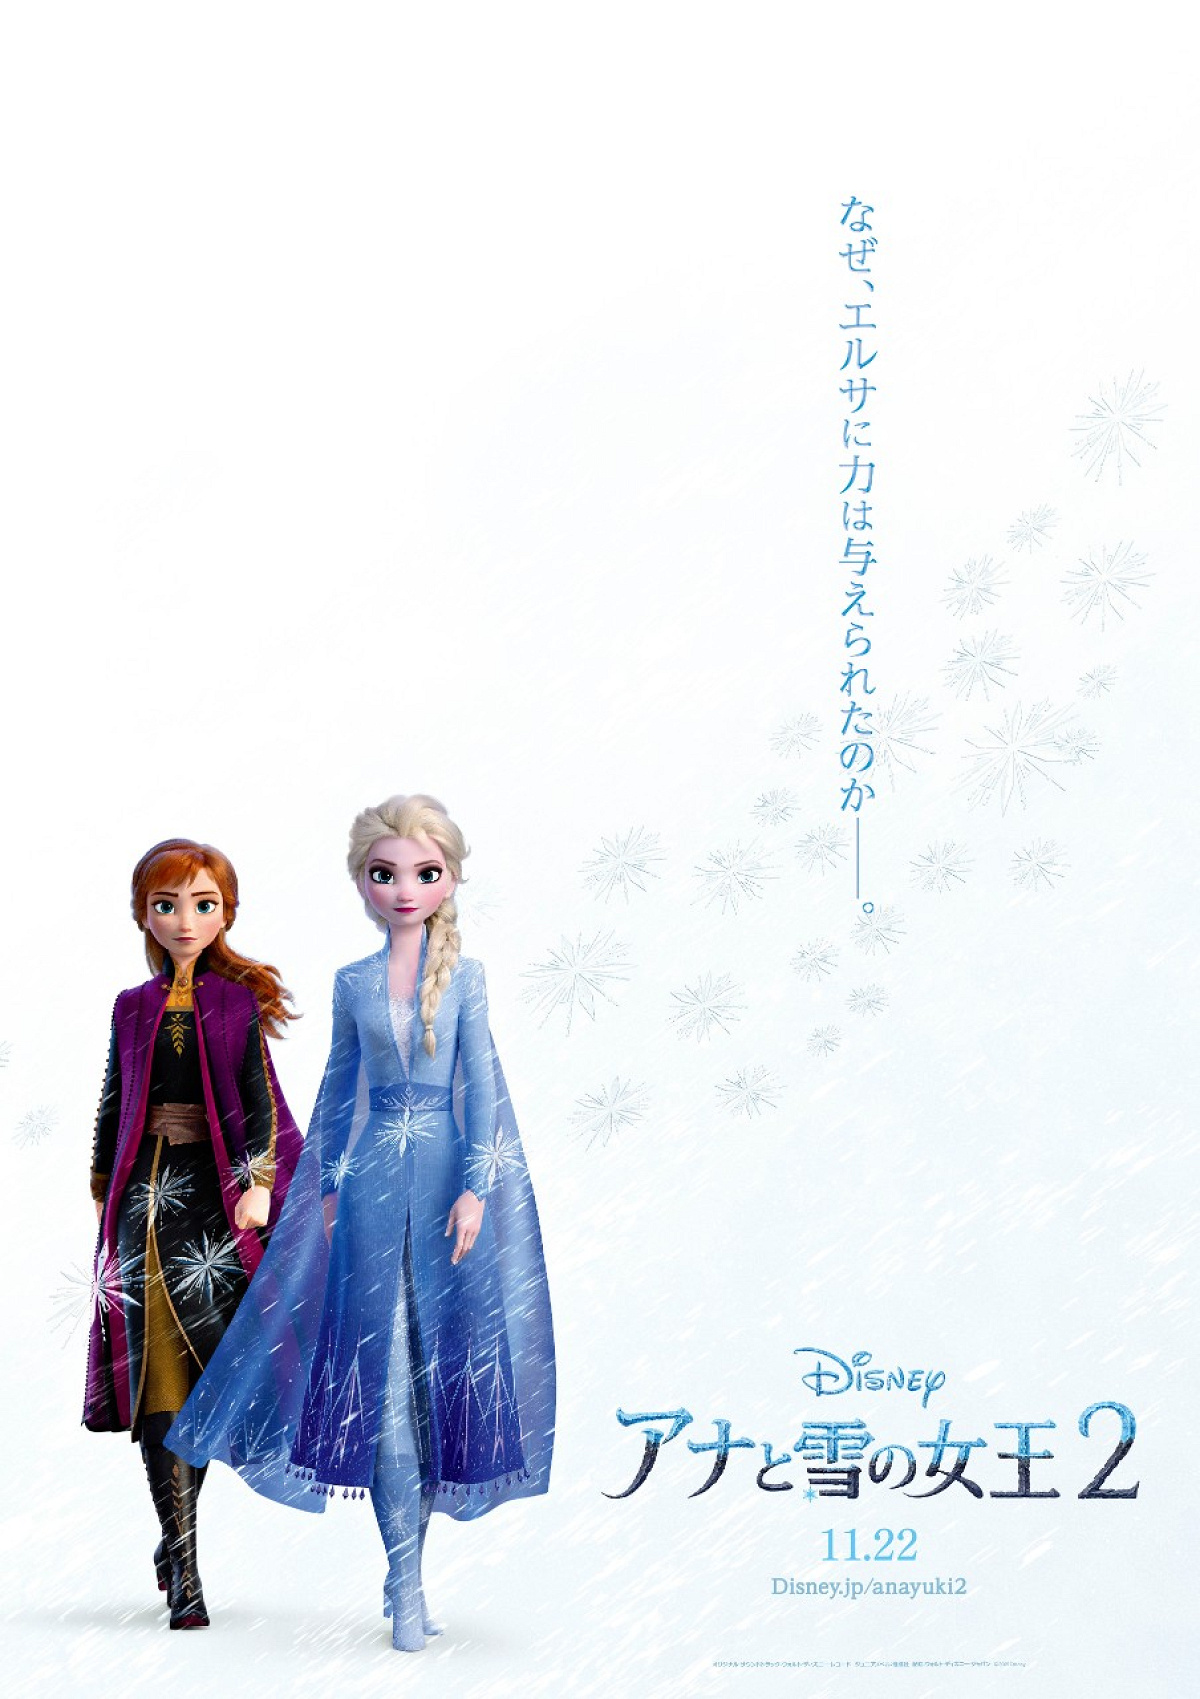 「アナと雪の女王2」日本版ポスター